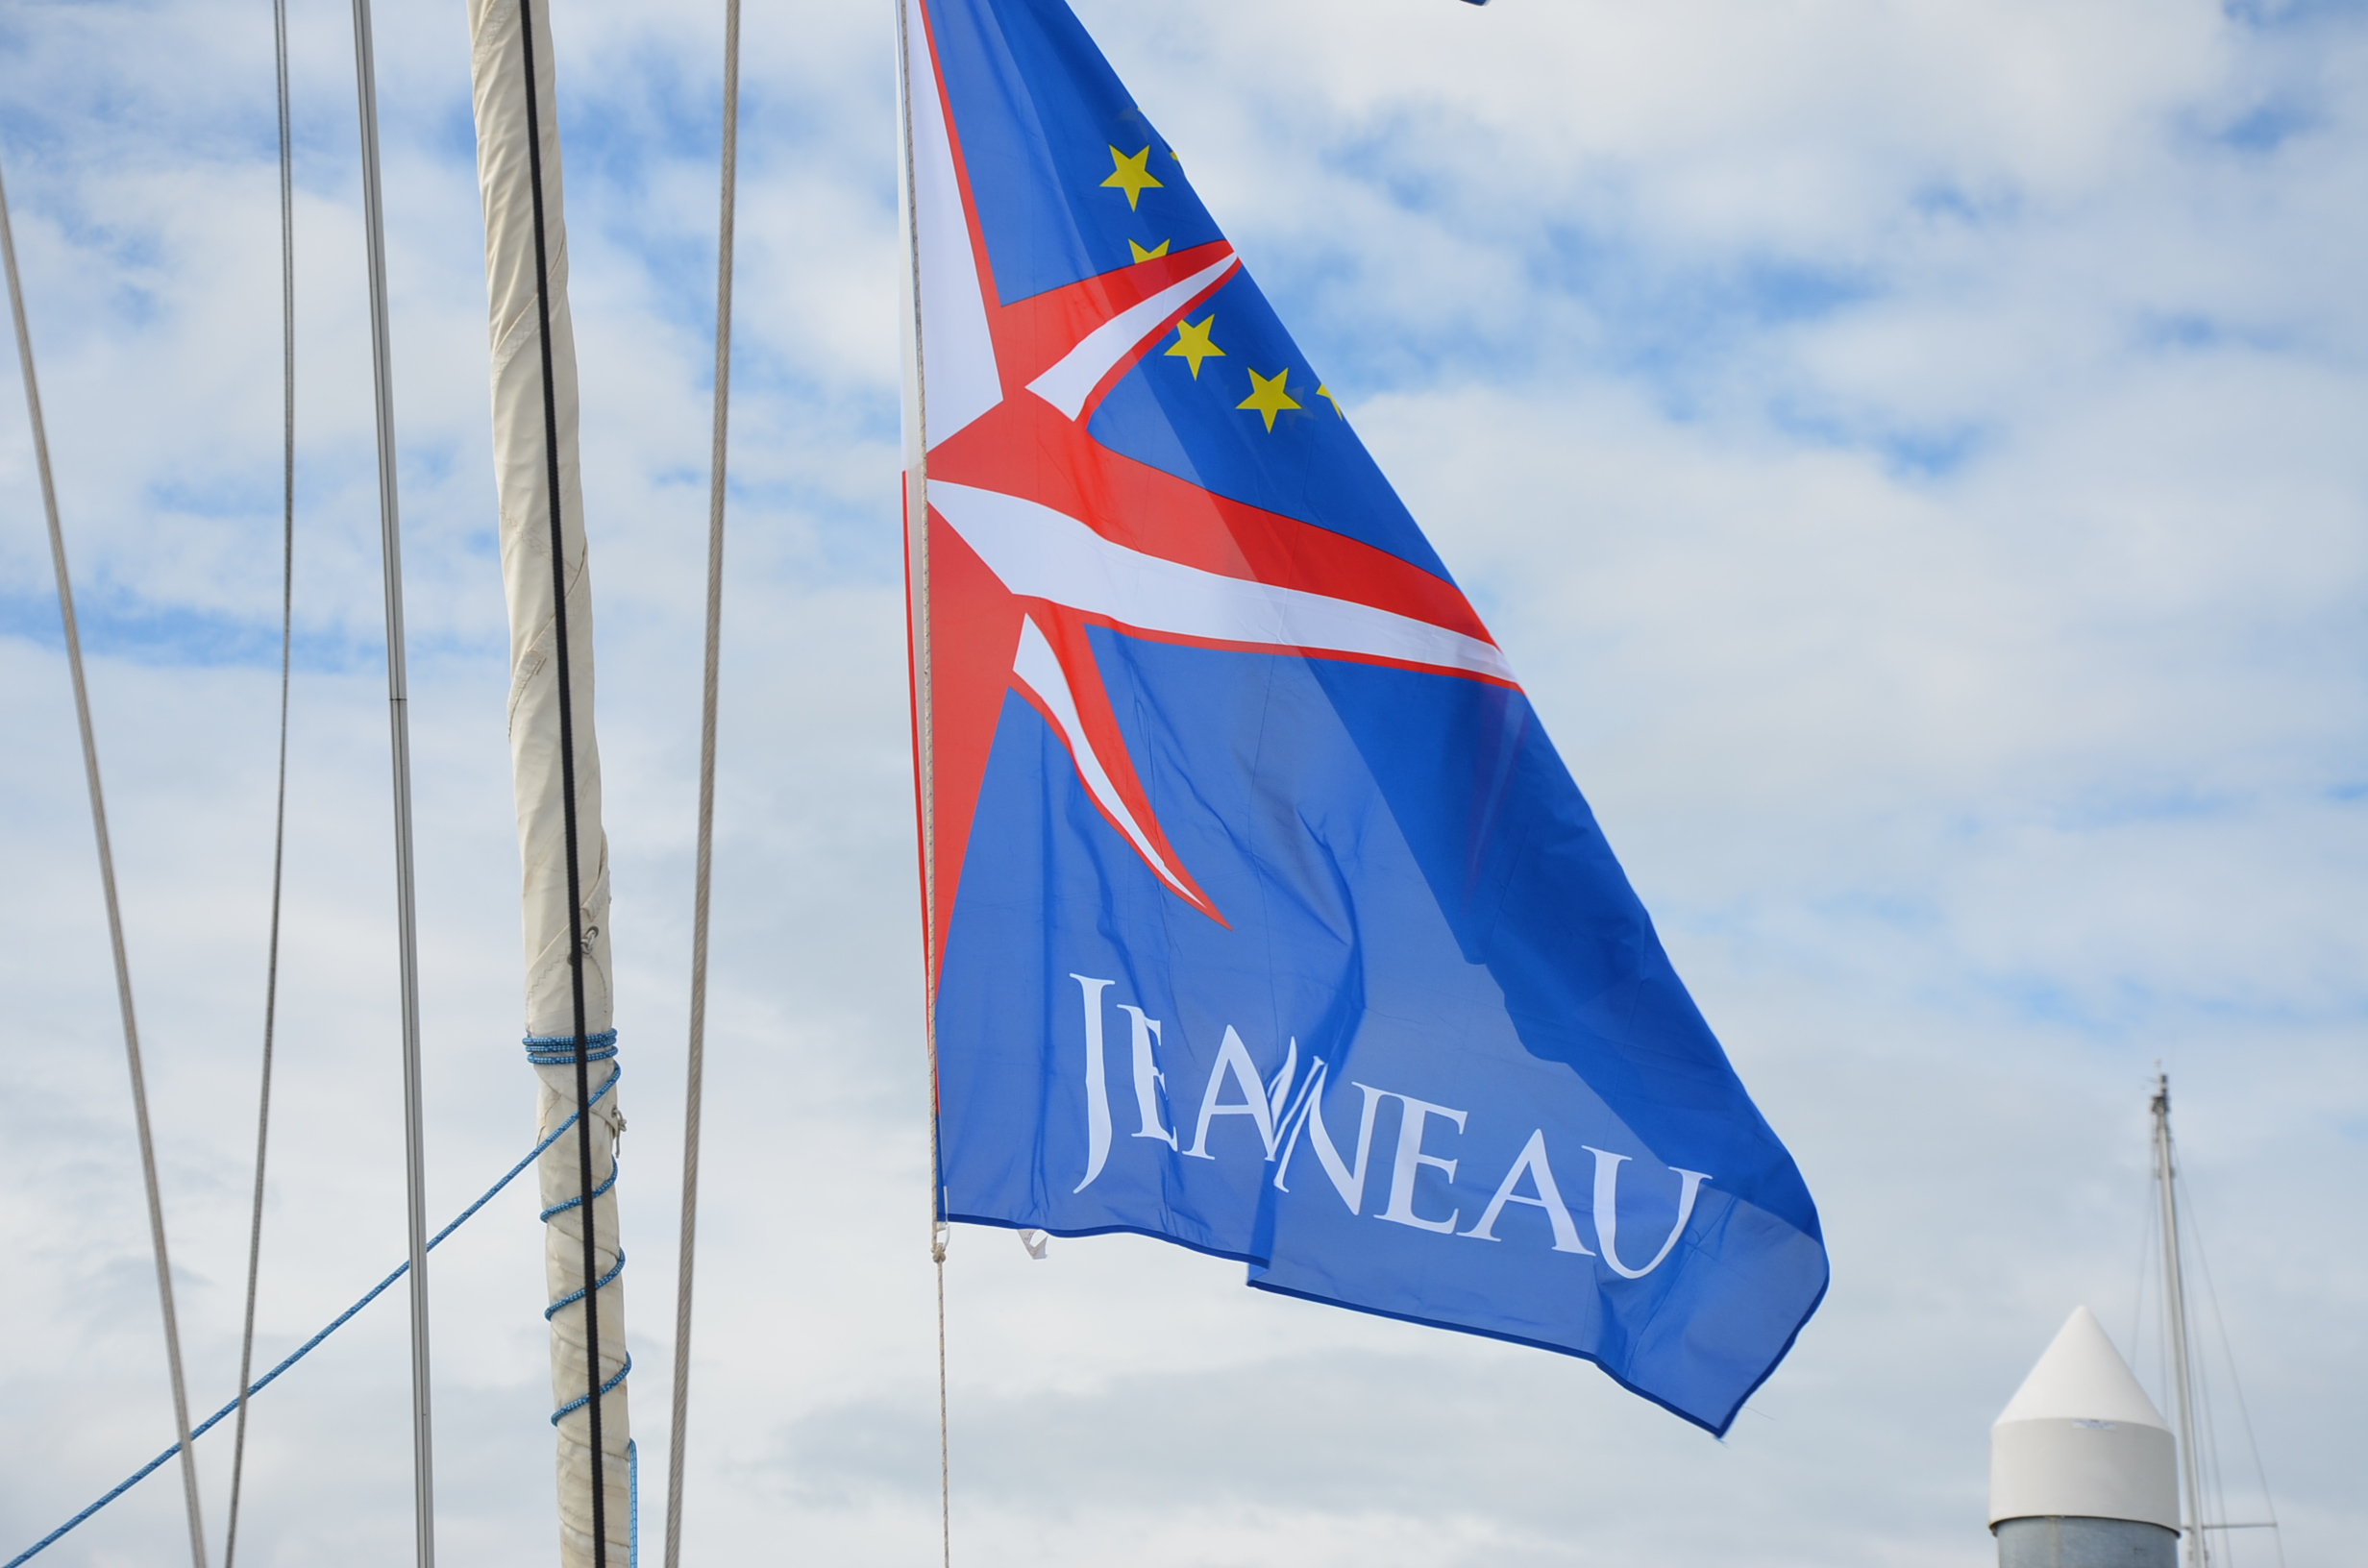 jeanneau flag